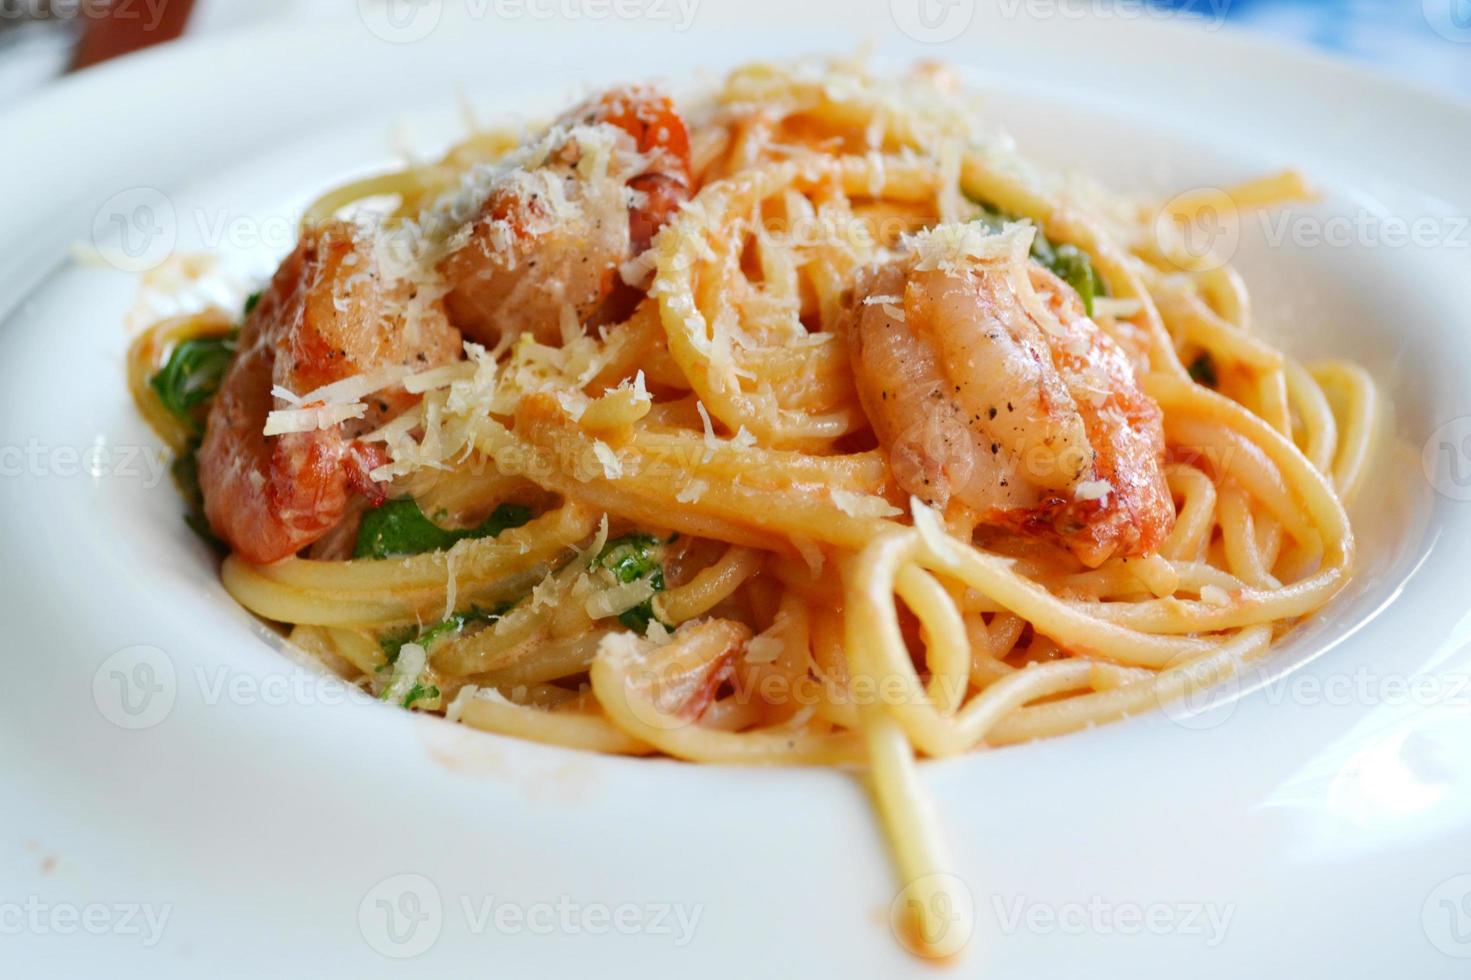 läcker pastaspagetti med räkor och annan skaldjur foto